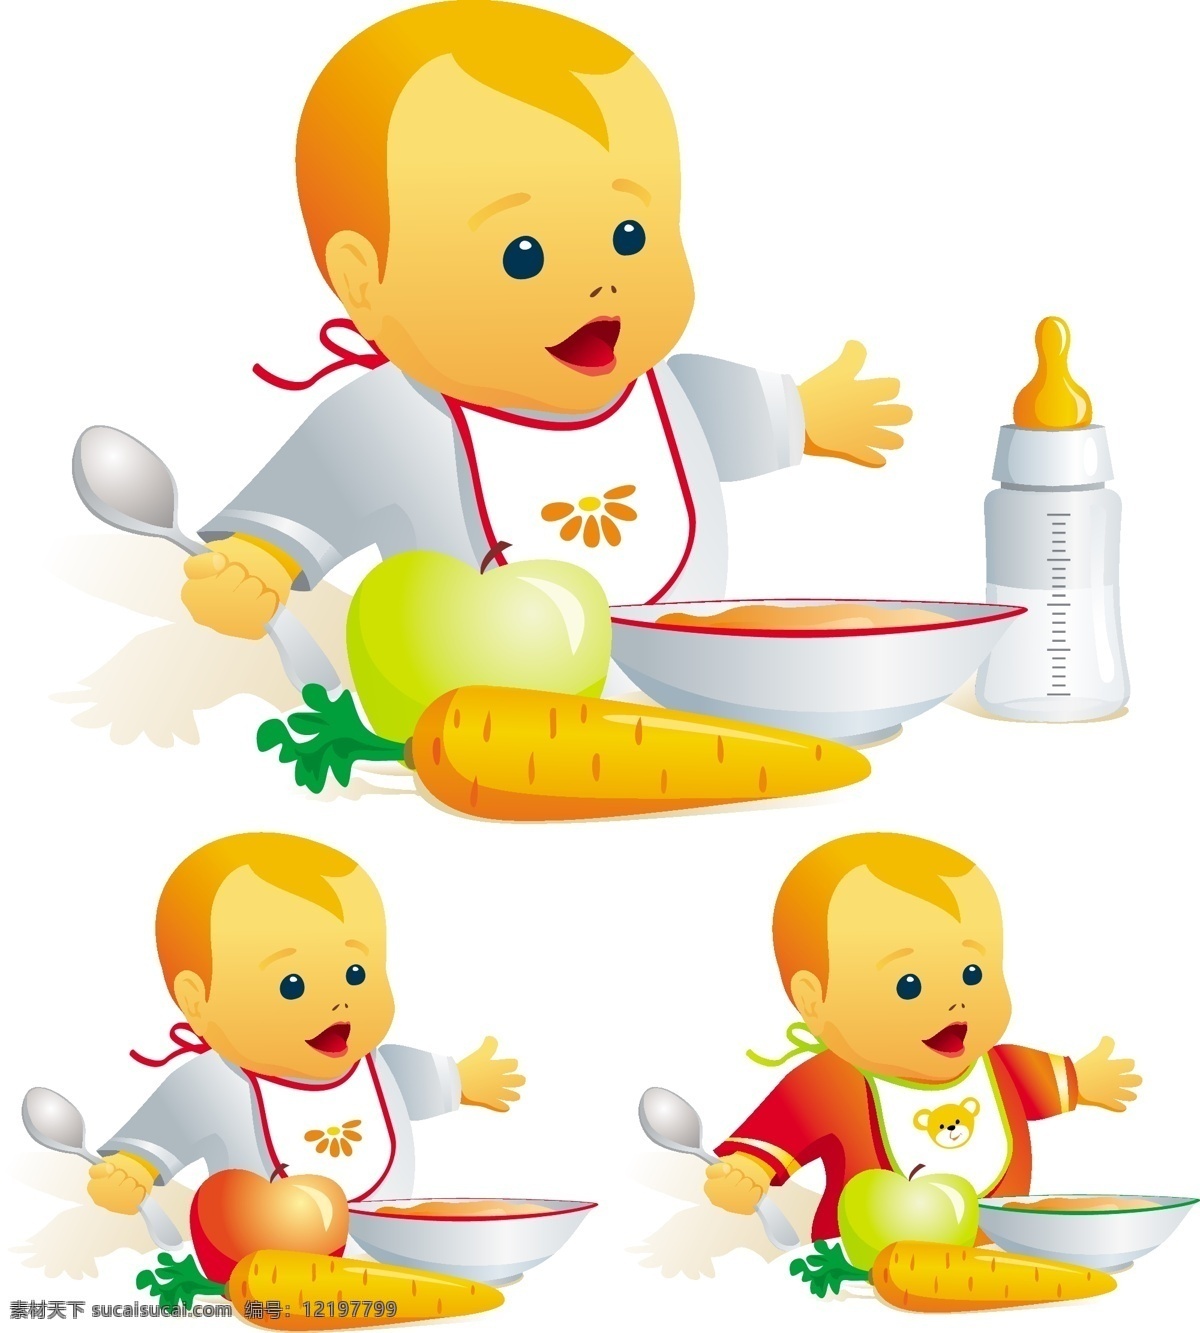 用餐 婴儿 矢量 eps格式 矢量素材 儿童 bb 食物 奶瓶 红萝卜 苹果 碗 勺子 白色